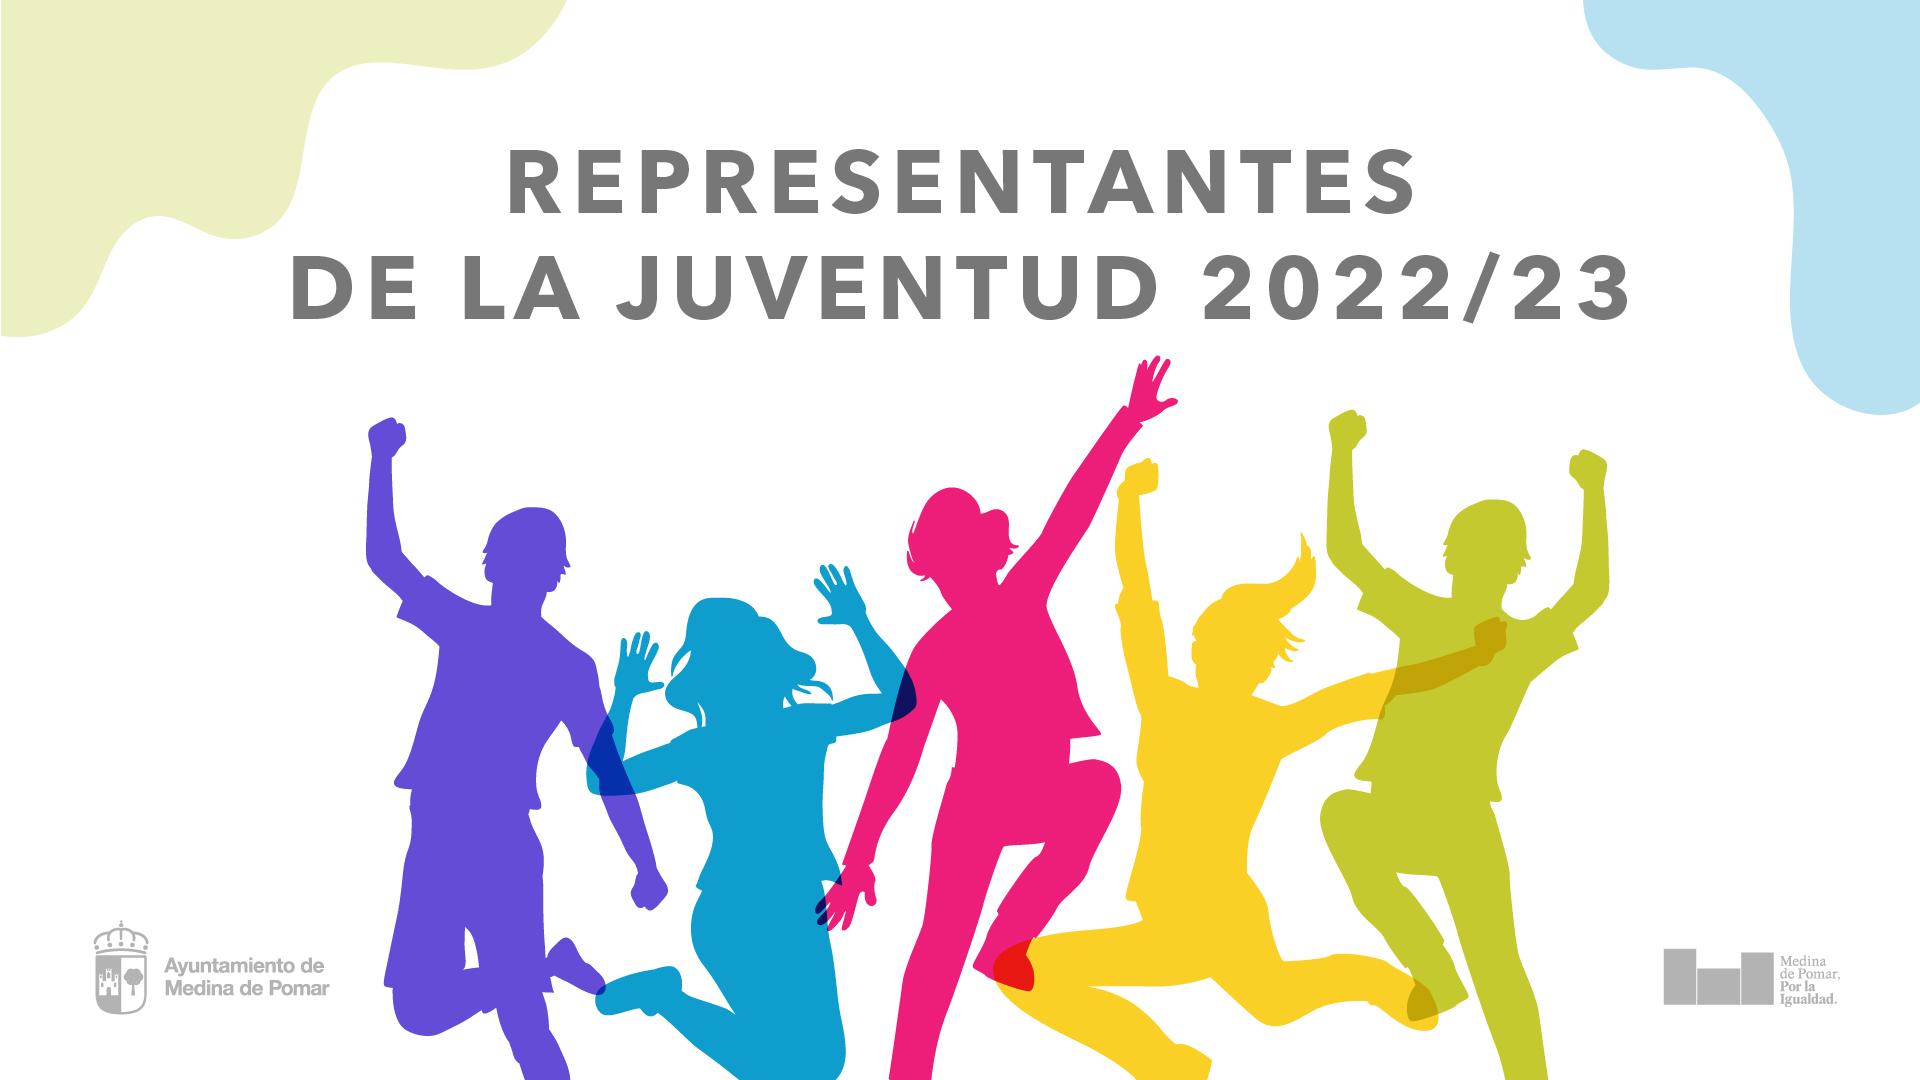 Representantes de la juventud 2022/23